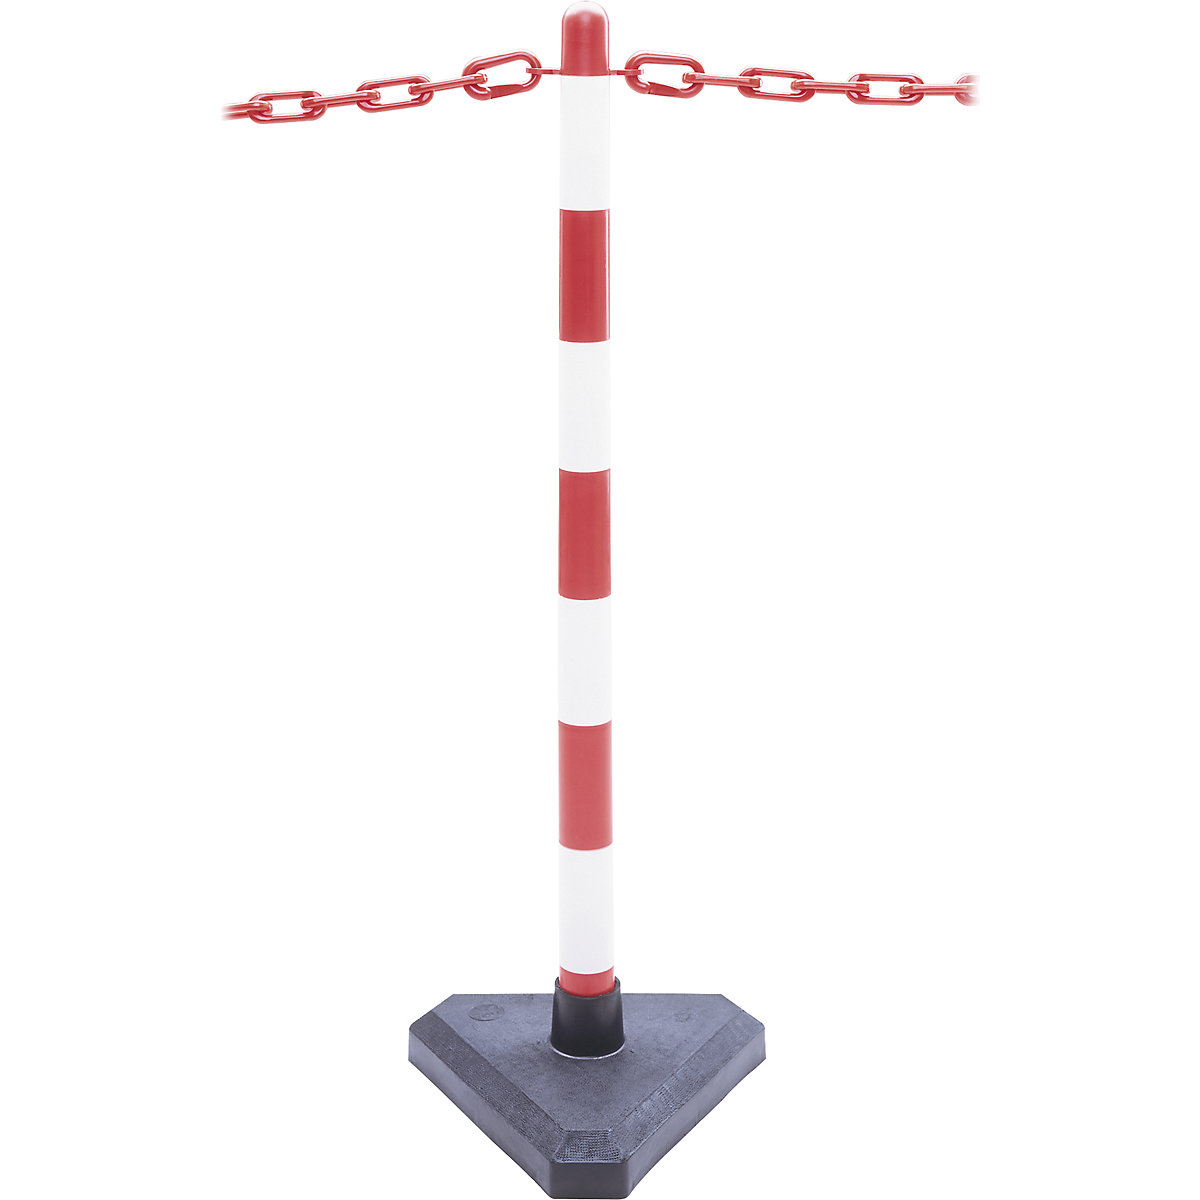 Komplet stalaka s lancem, trokutasto podnožje napunjeno cementom, 6 stupova, lanac dužine 10 m, u crvenoj / bijeloj boji-7